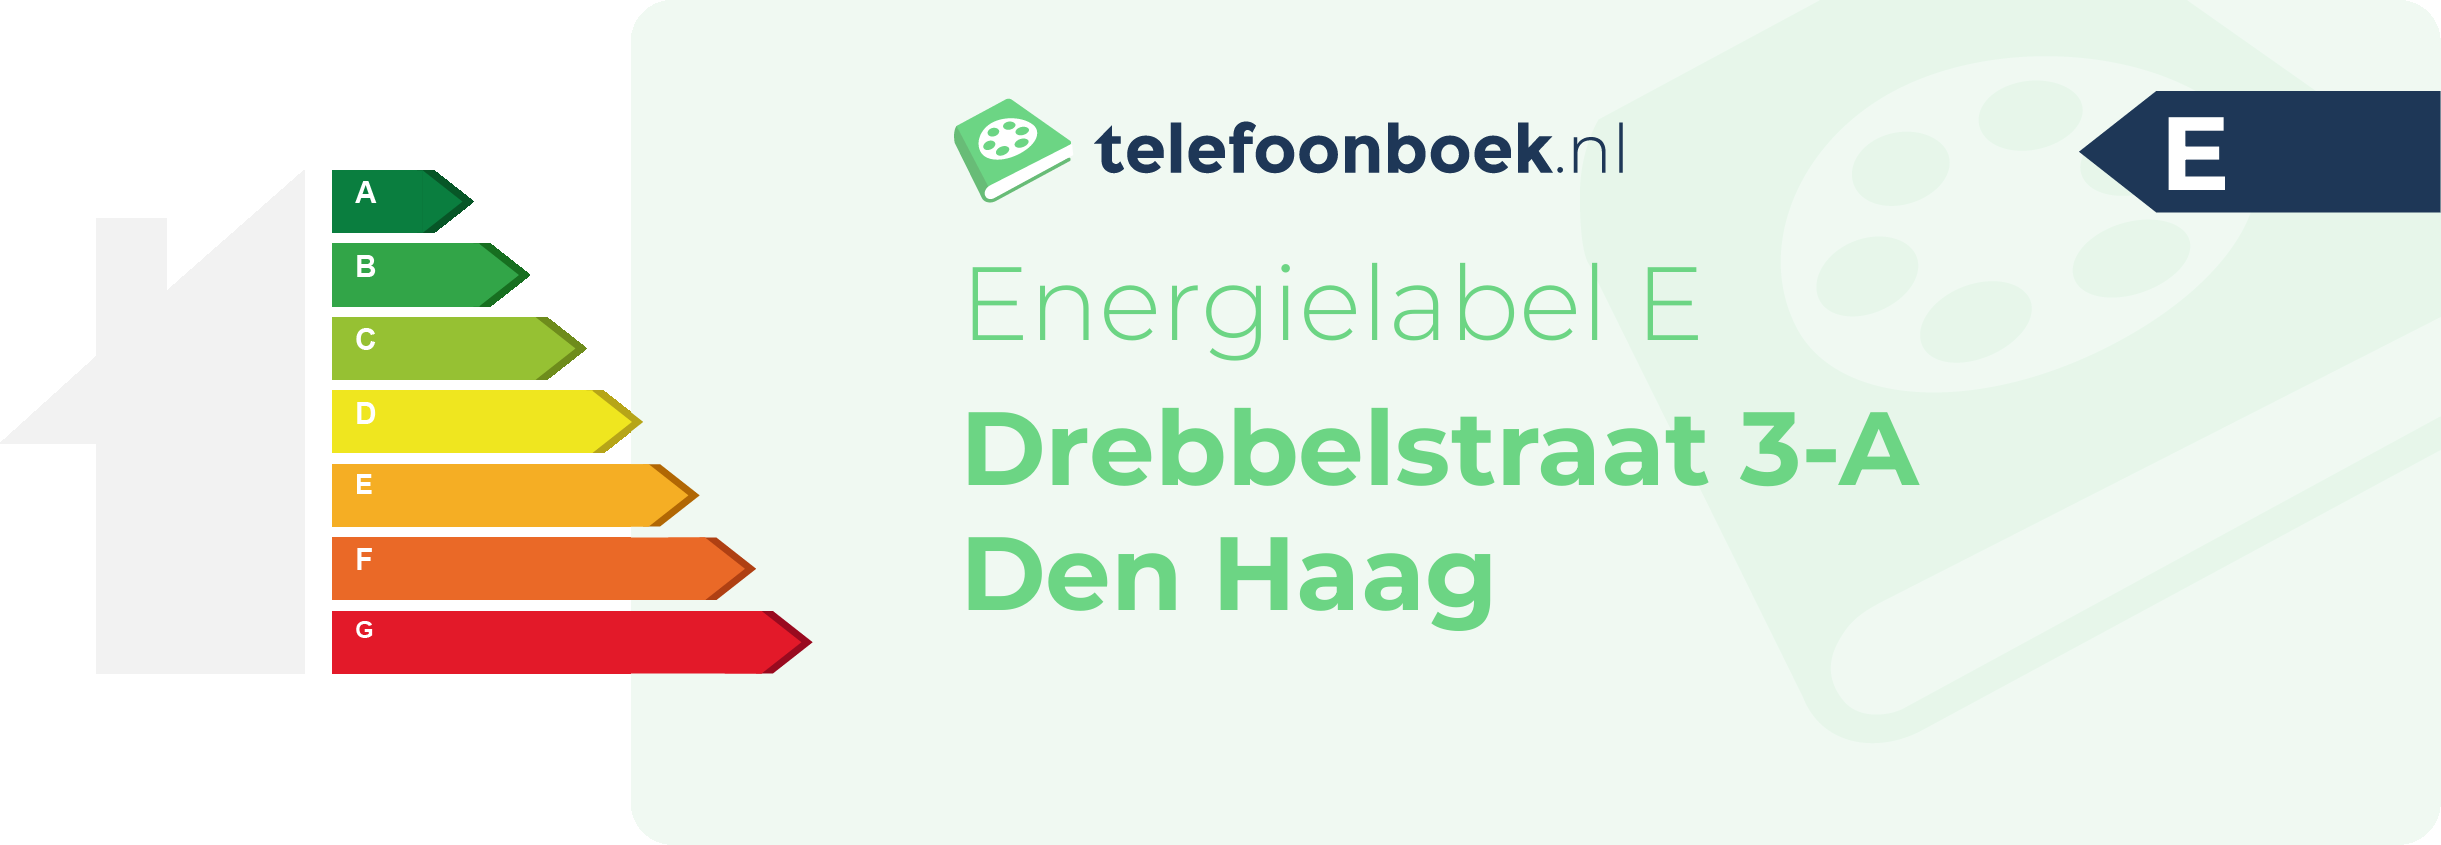 Energielabel Drebbelstraat 3-A Den Haag